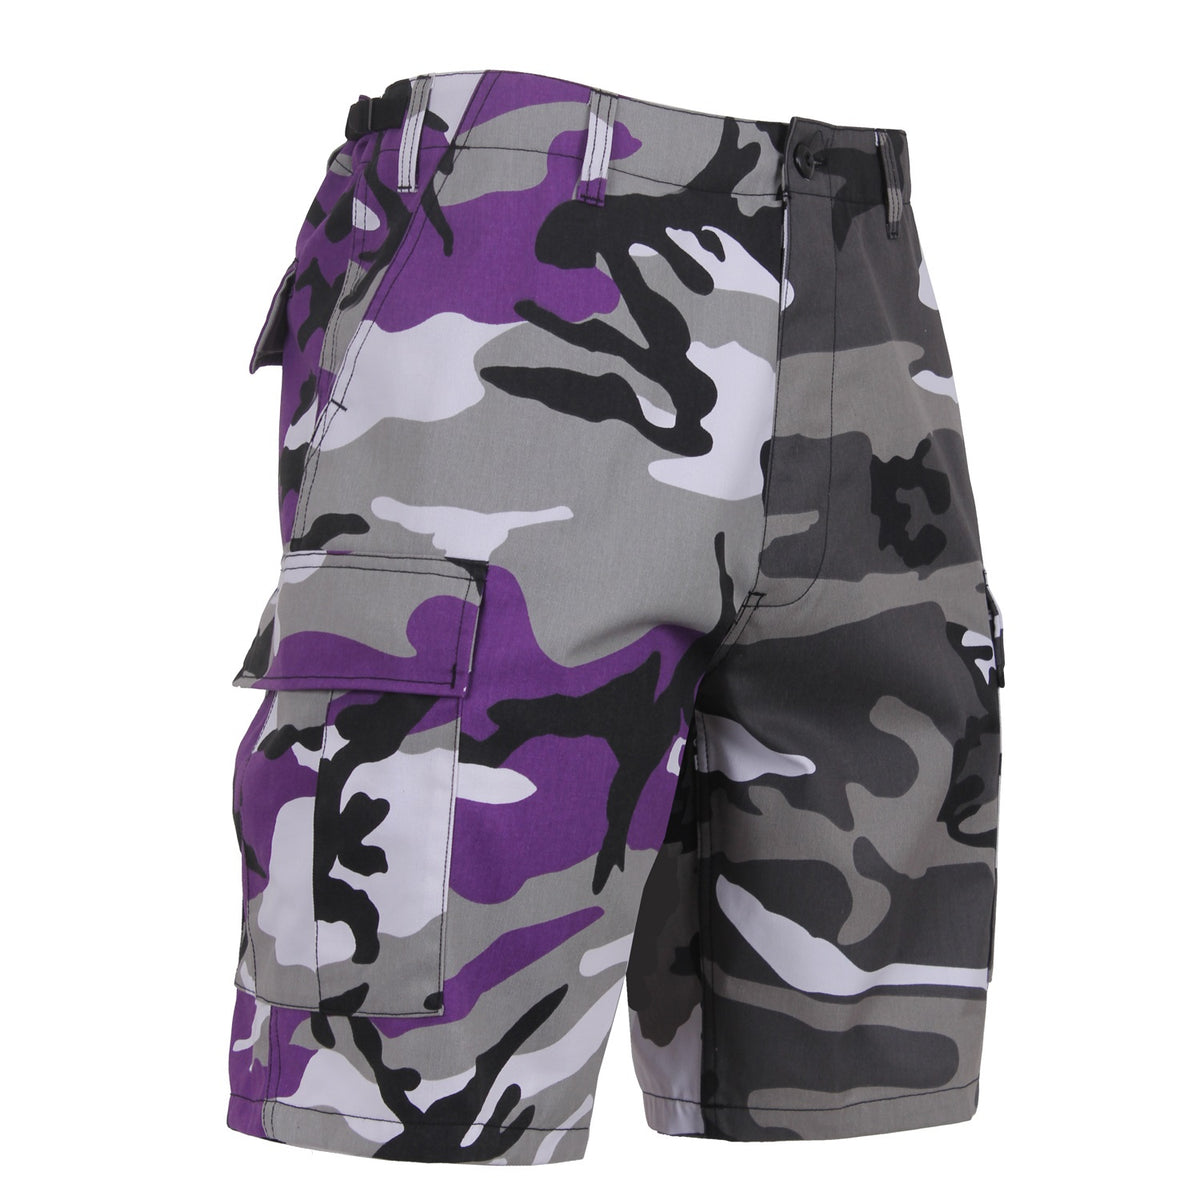 Two-Tone Camo BDU Shorts - CLOSEOUT!